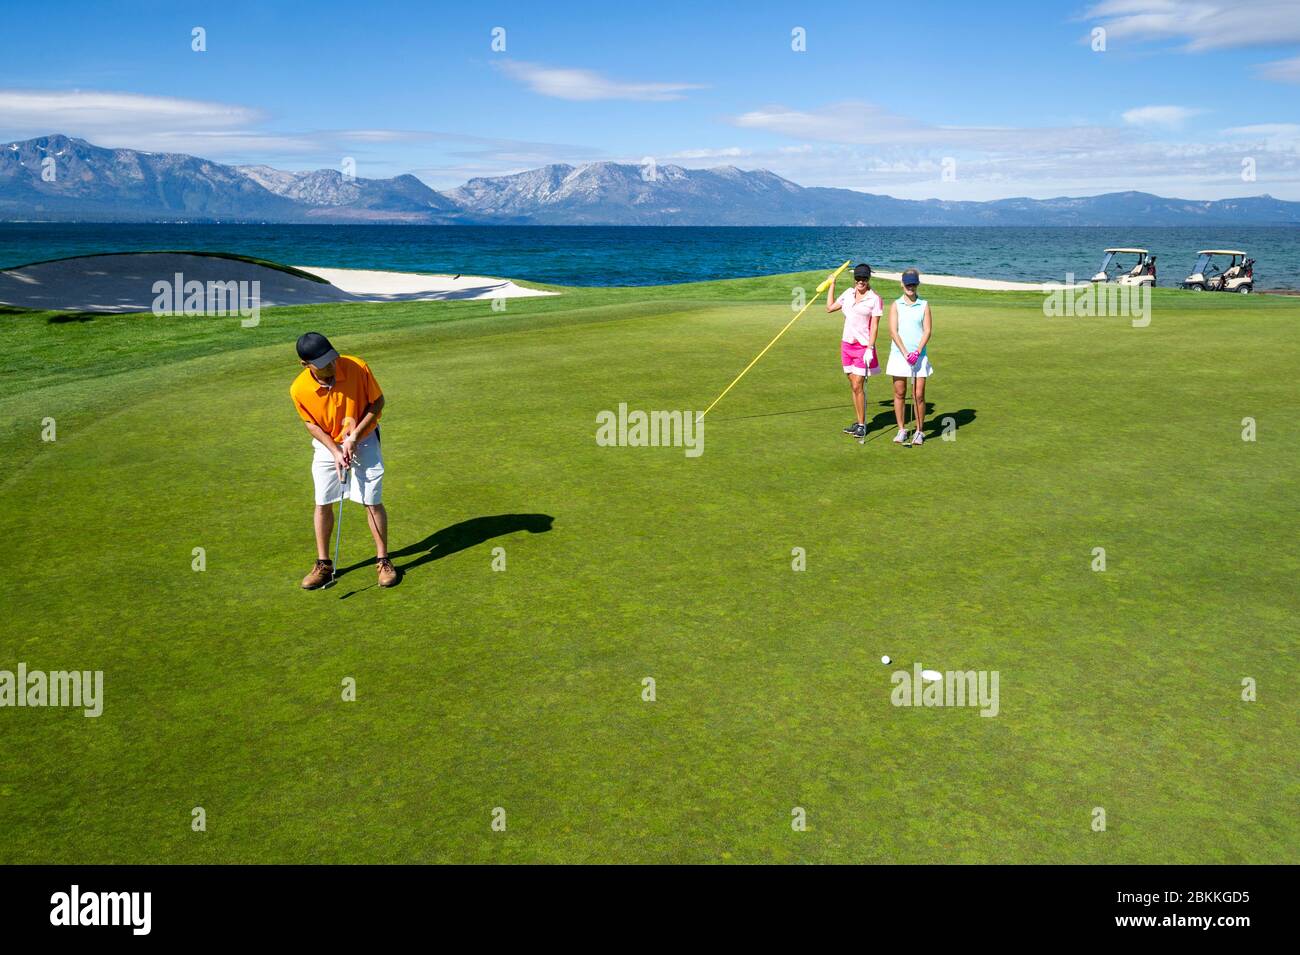 Ein Mann und zwei Frauen beenden eine Runde Golf in Edgewood Tahoe und setzen auf das 18. Loch mit Blick auf Mount Tallac im Hintergrund in Stateline, N Stockfoto